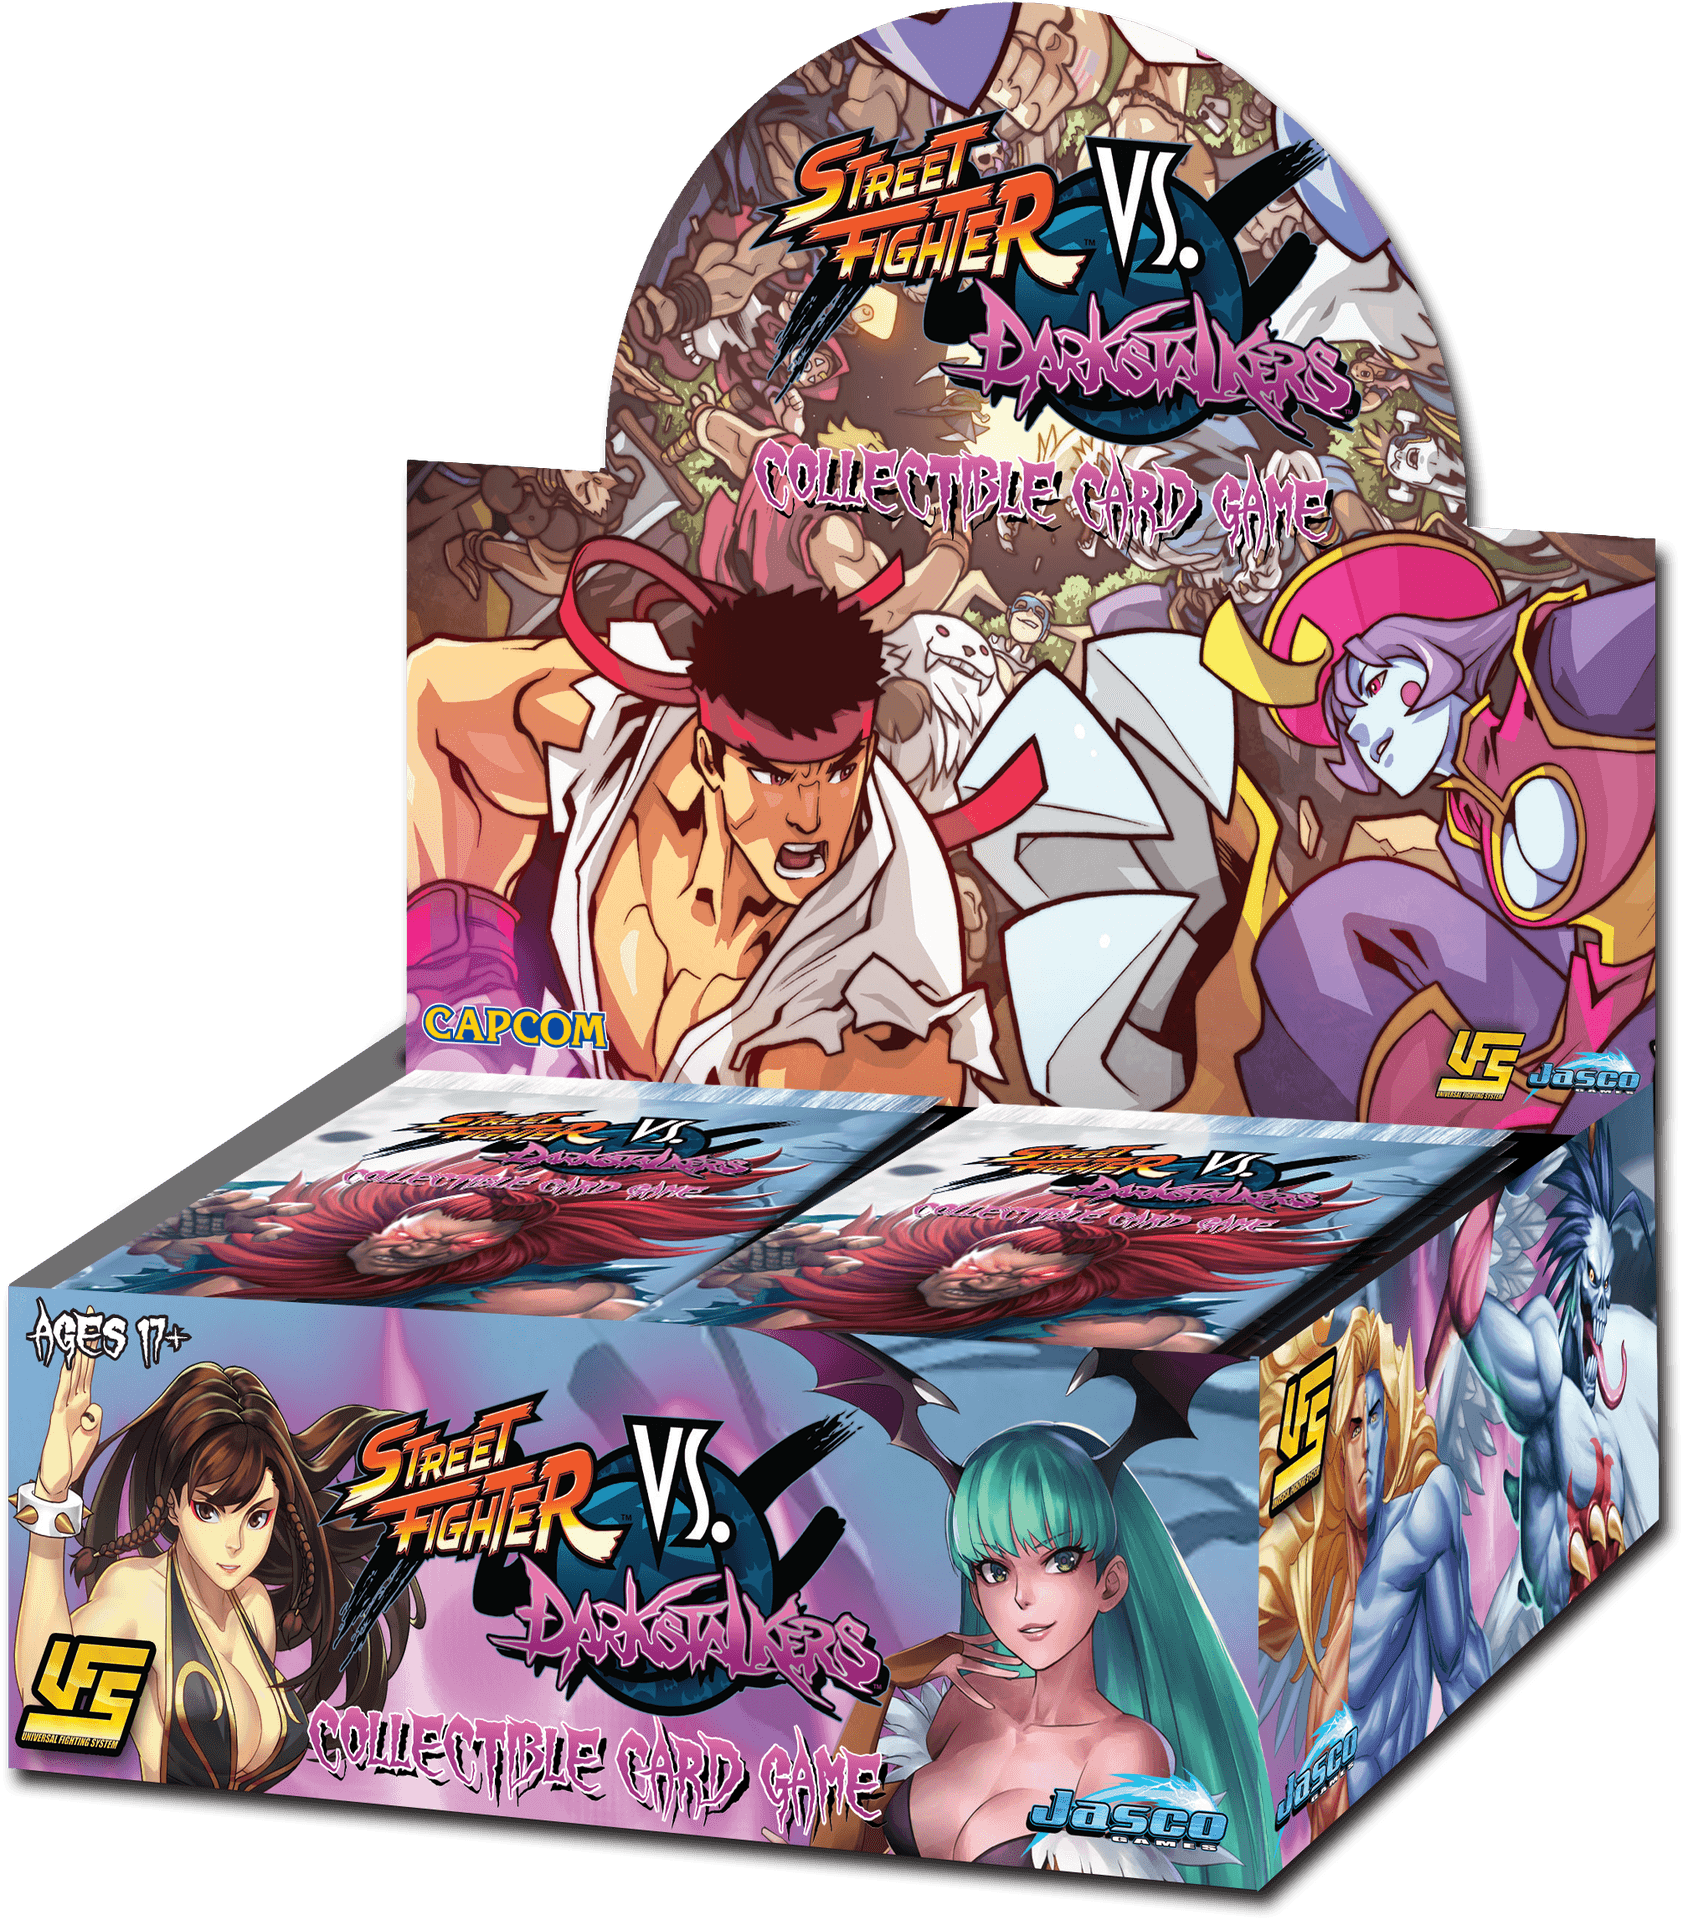 Street Fighter V S Darkstalkers Card Game Box PNG image